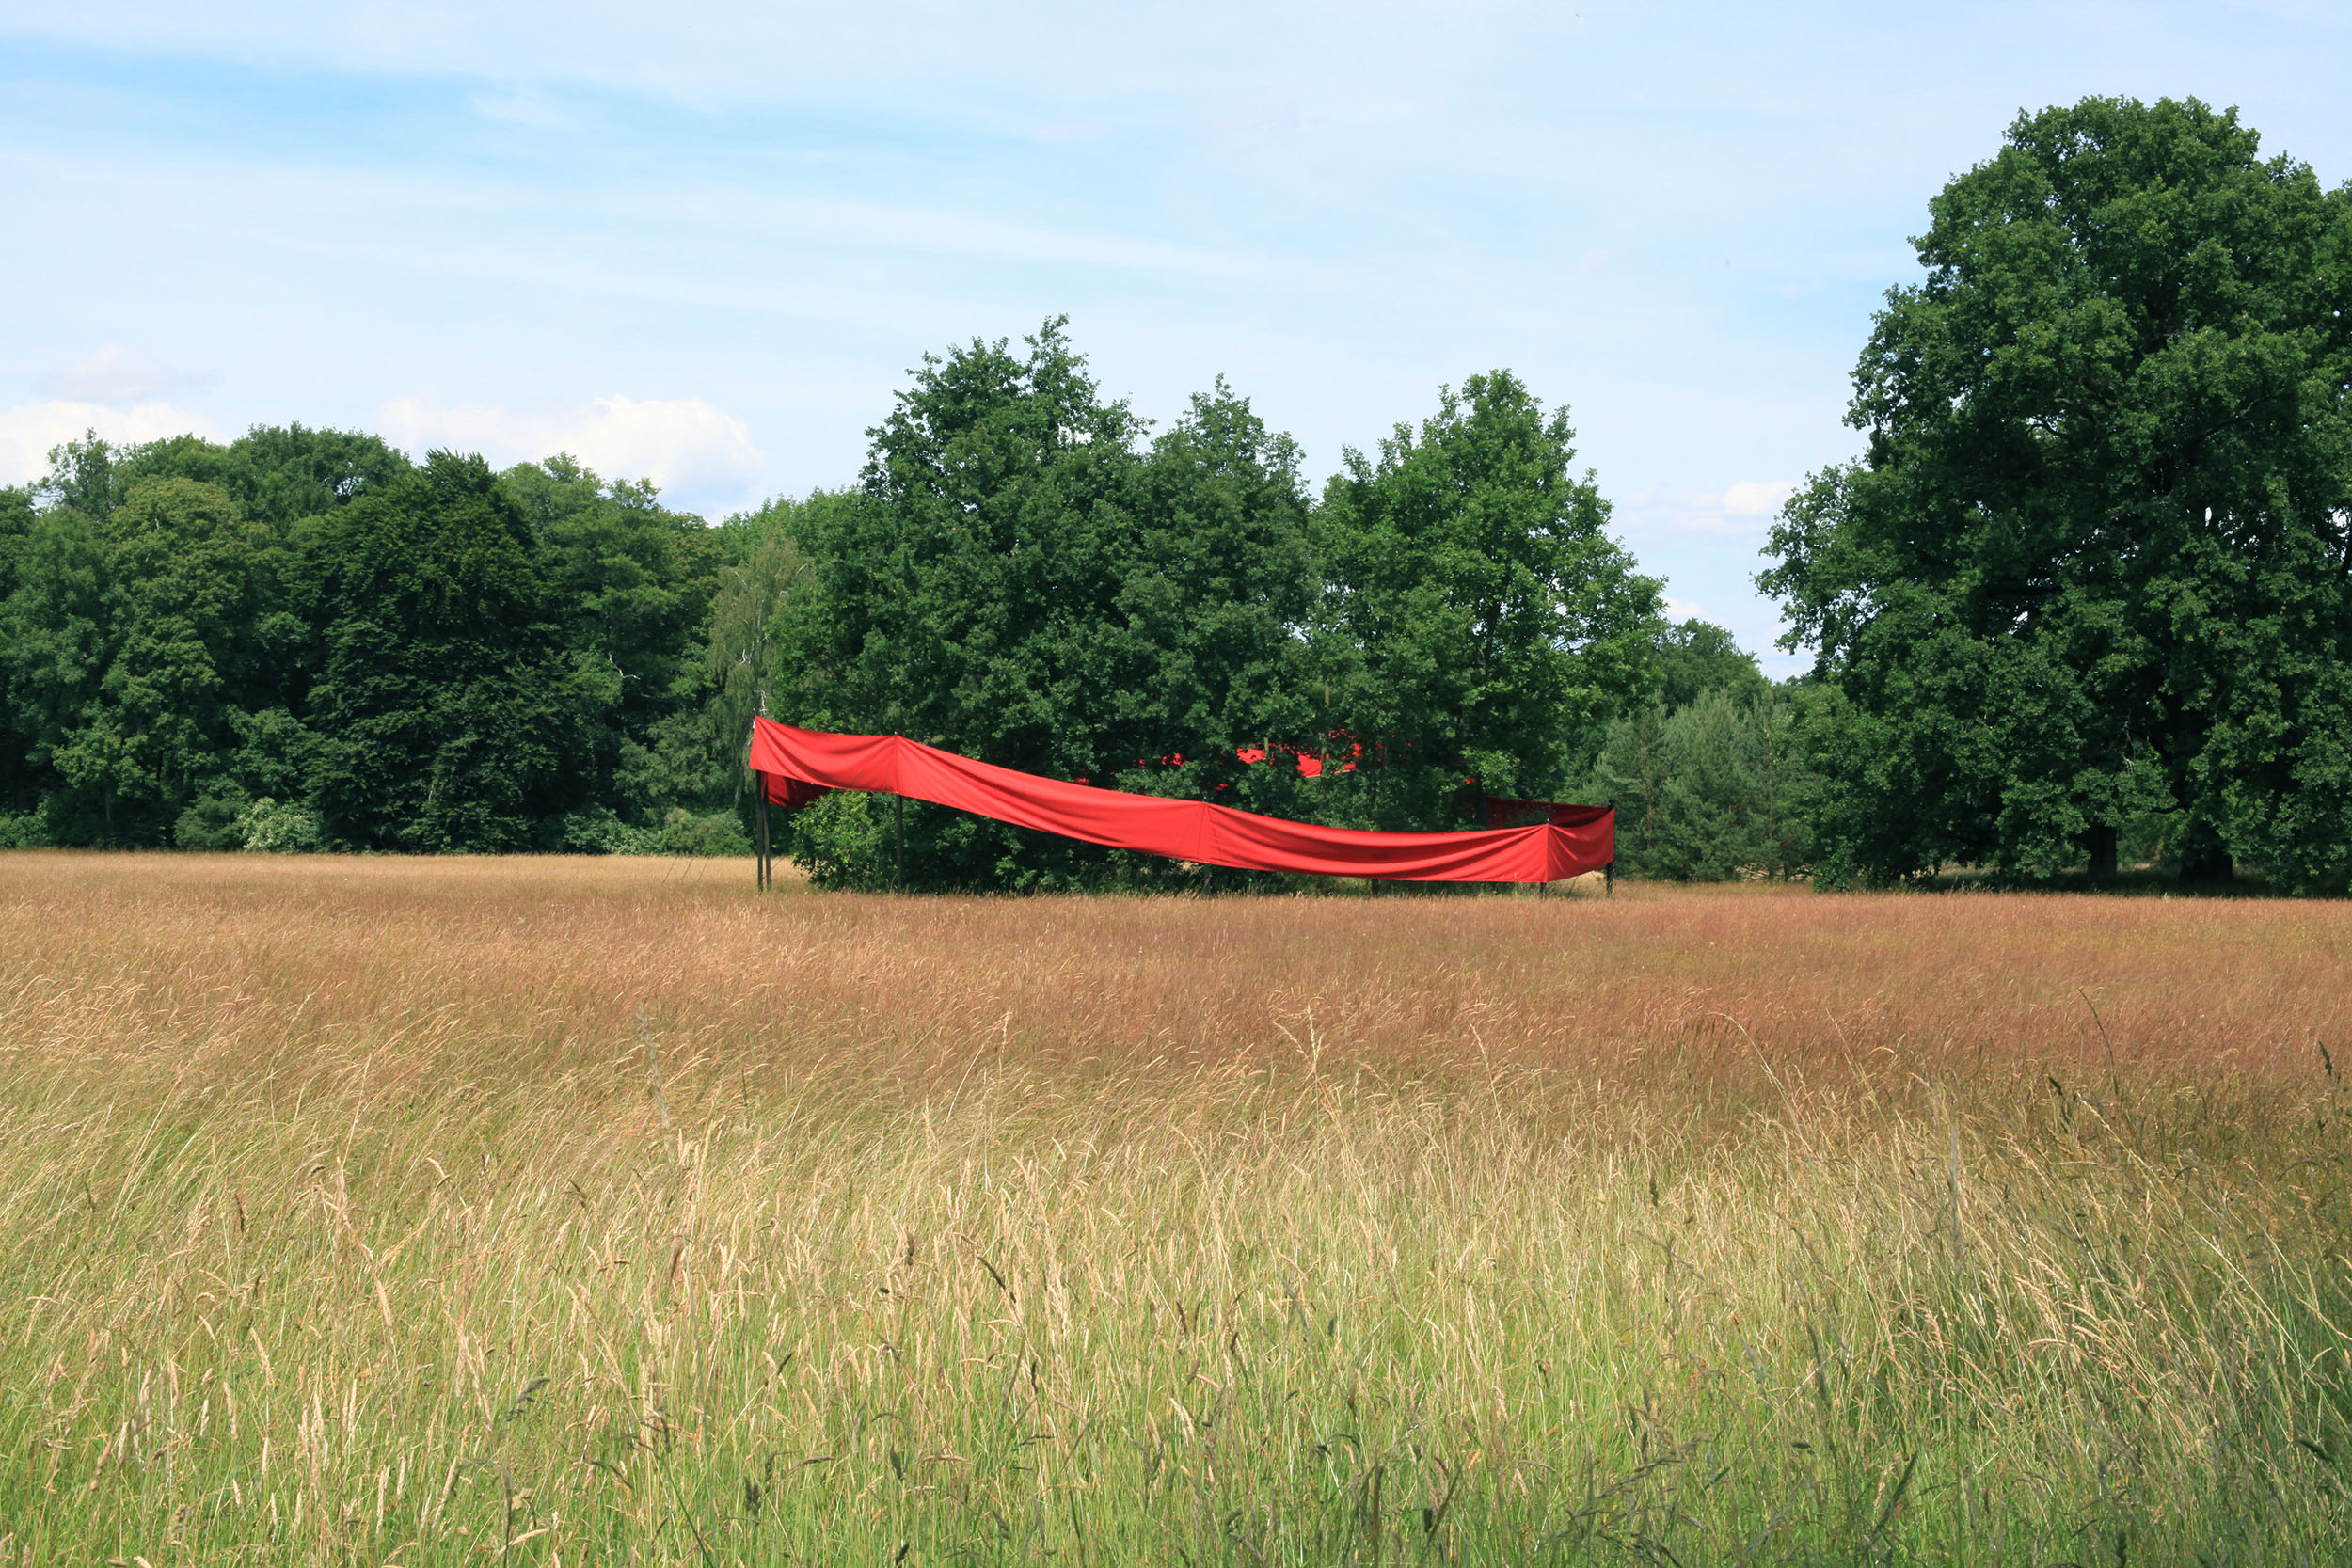 Intervention im Park Sanssouci – Ein rotes Band umhüllt eine Baumgruppe auf einem Feld